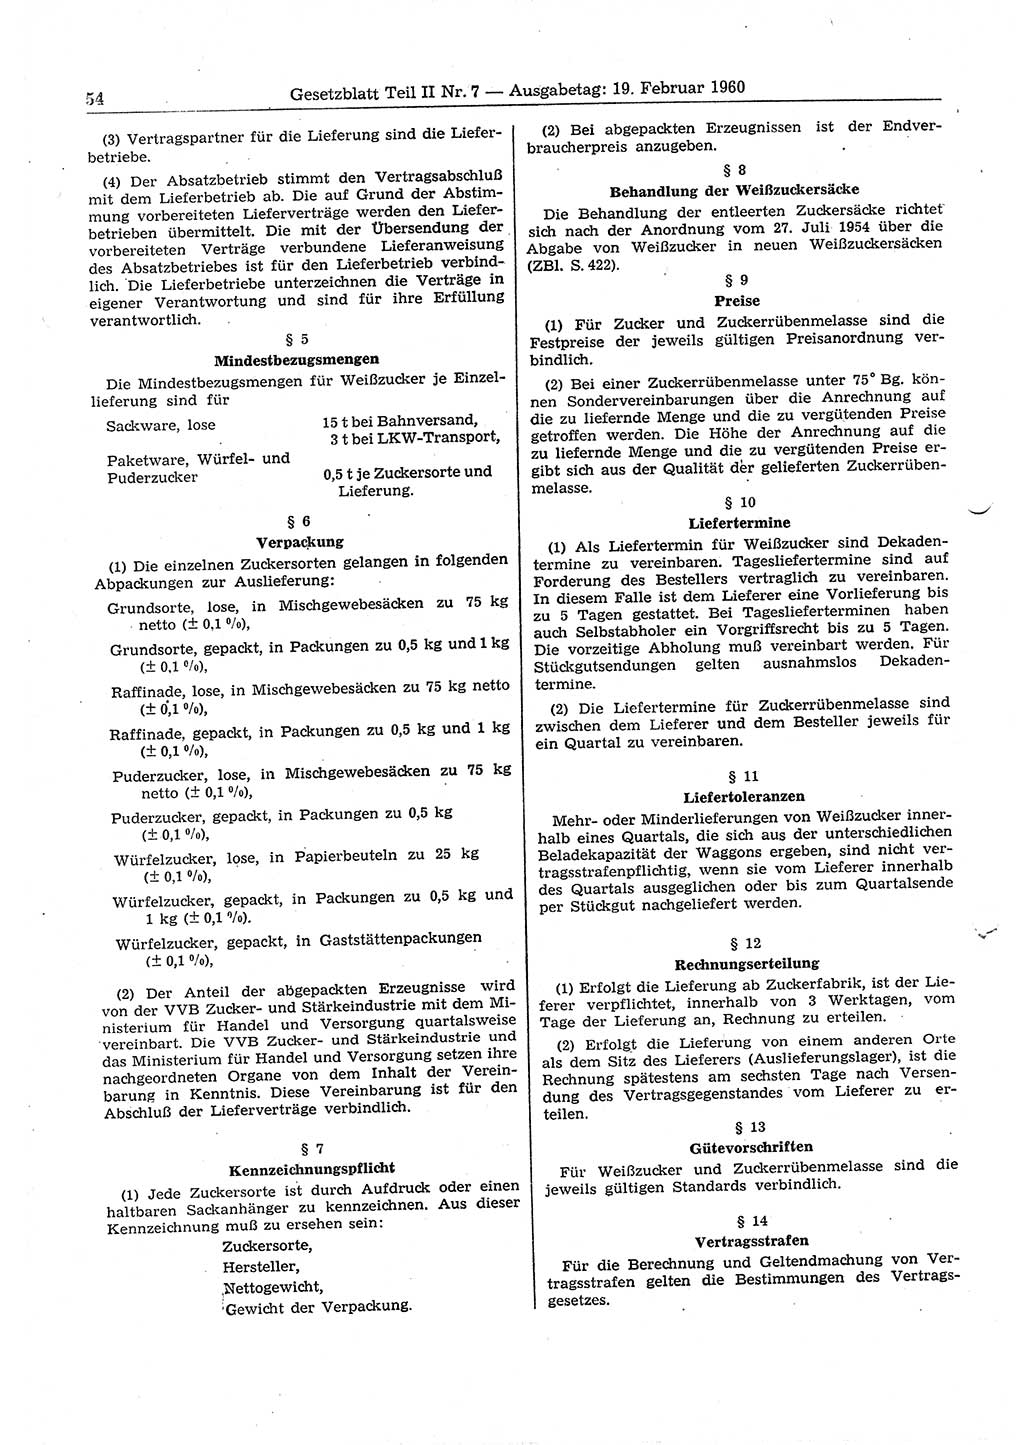 Gesetzblatt (GBl.) der Deutschen Demokratischen Republik (DDR) Teil ⅠⅠ 1960, Seite 54 (GBl. DDR ⅠⅠ 1960, S. 54)